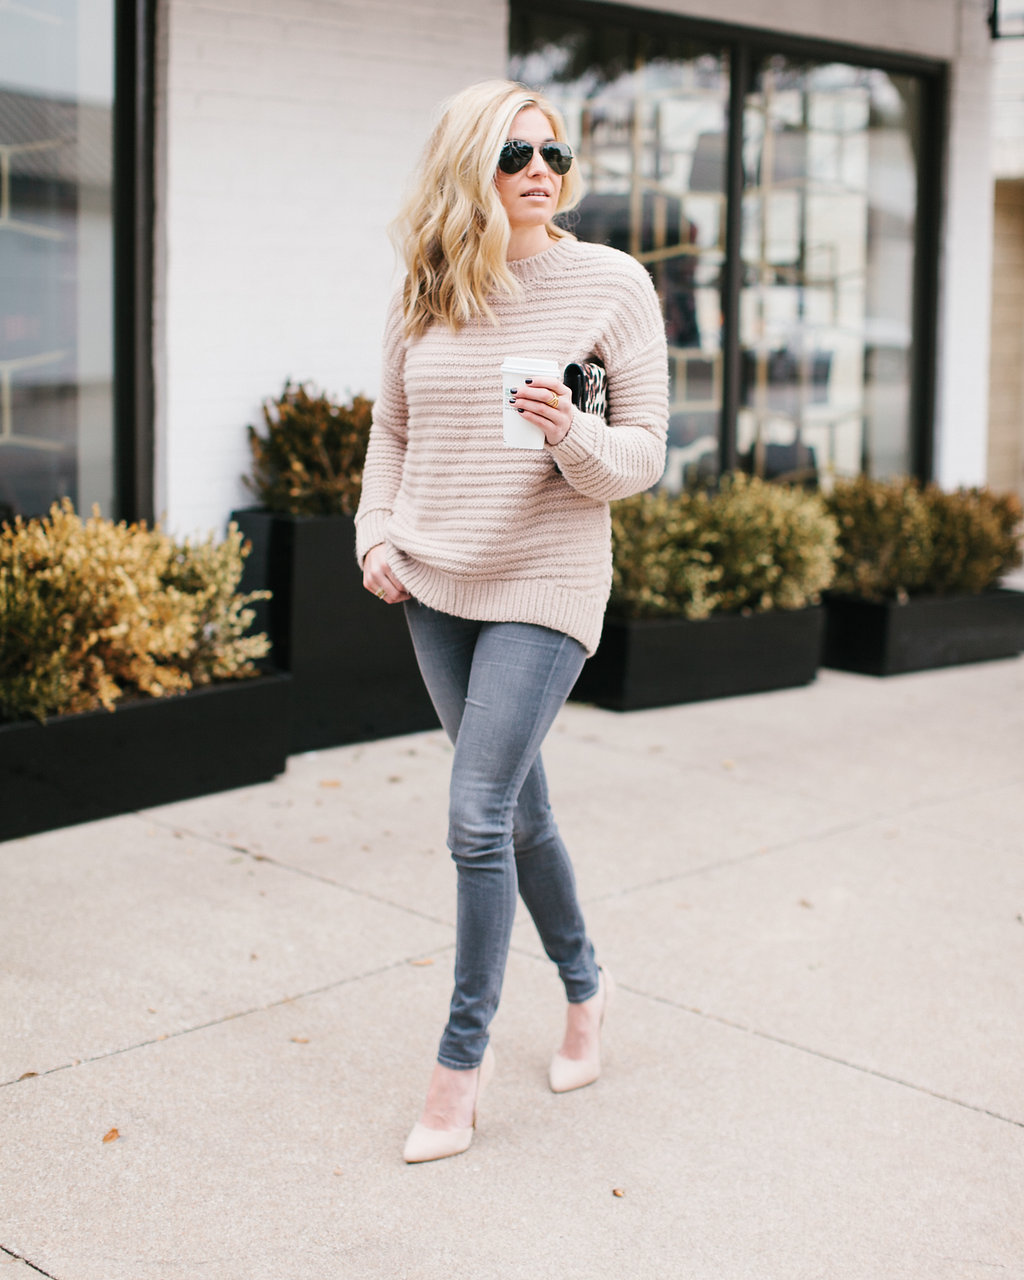 BLUSH SWEATER – One Small Blonde | Dallas Fashion Blogger